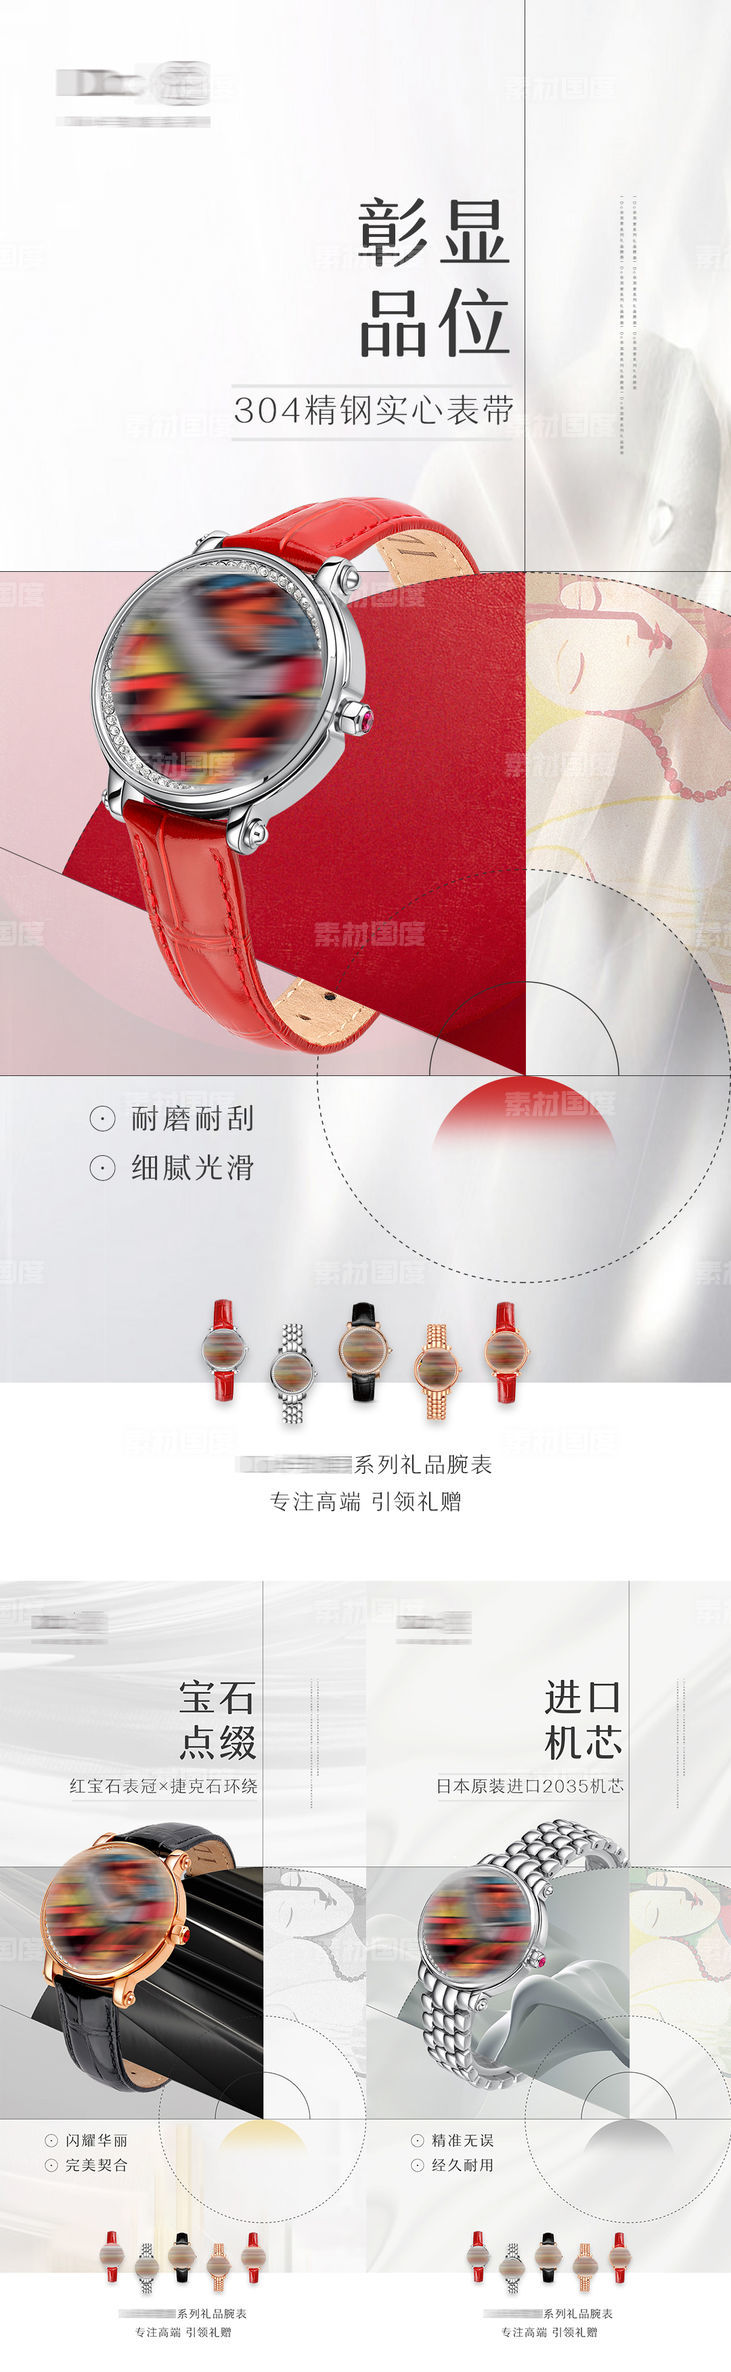 高档品牌腕表手表宣传海报